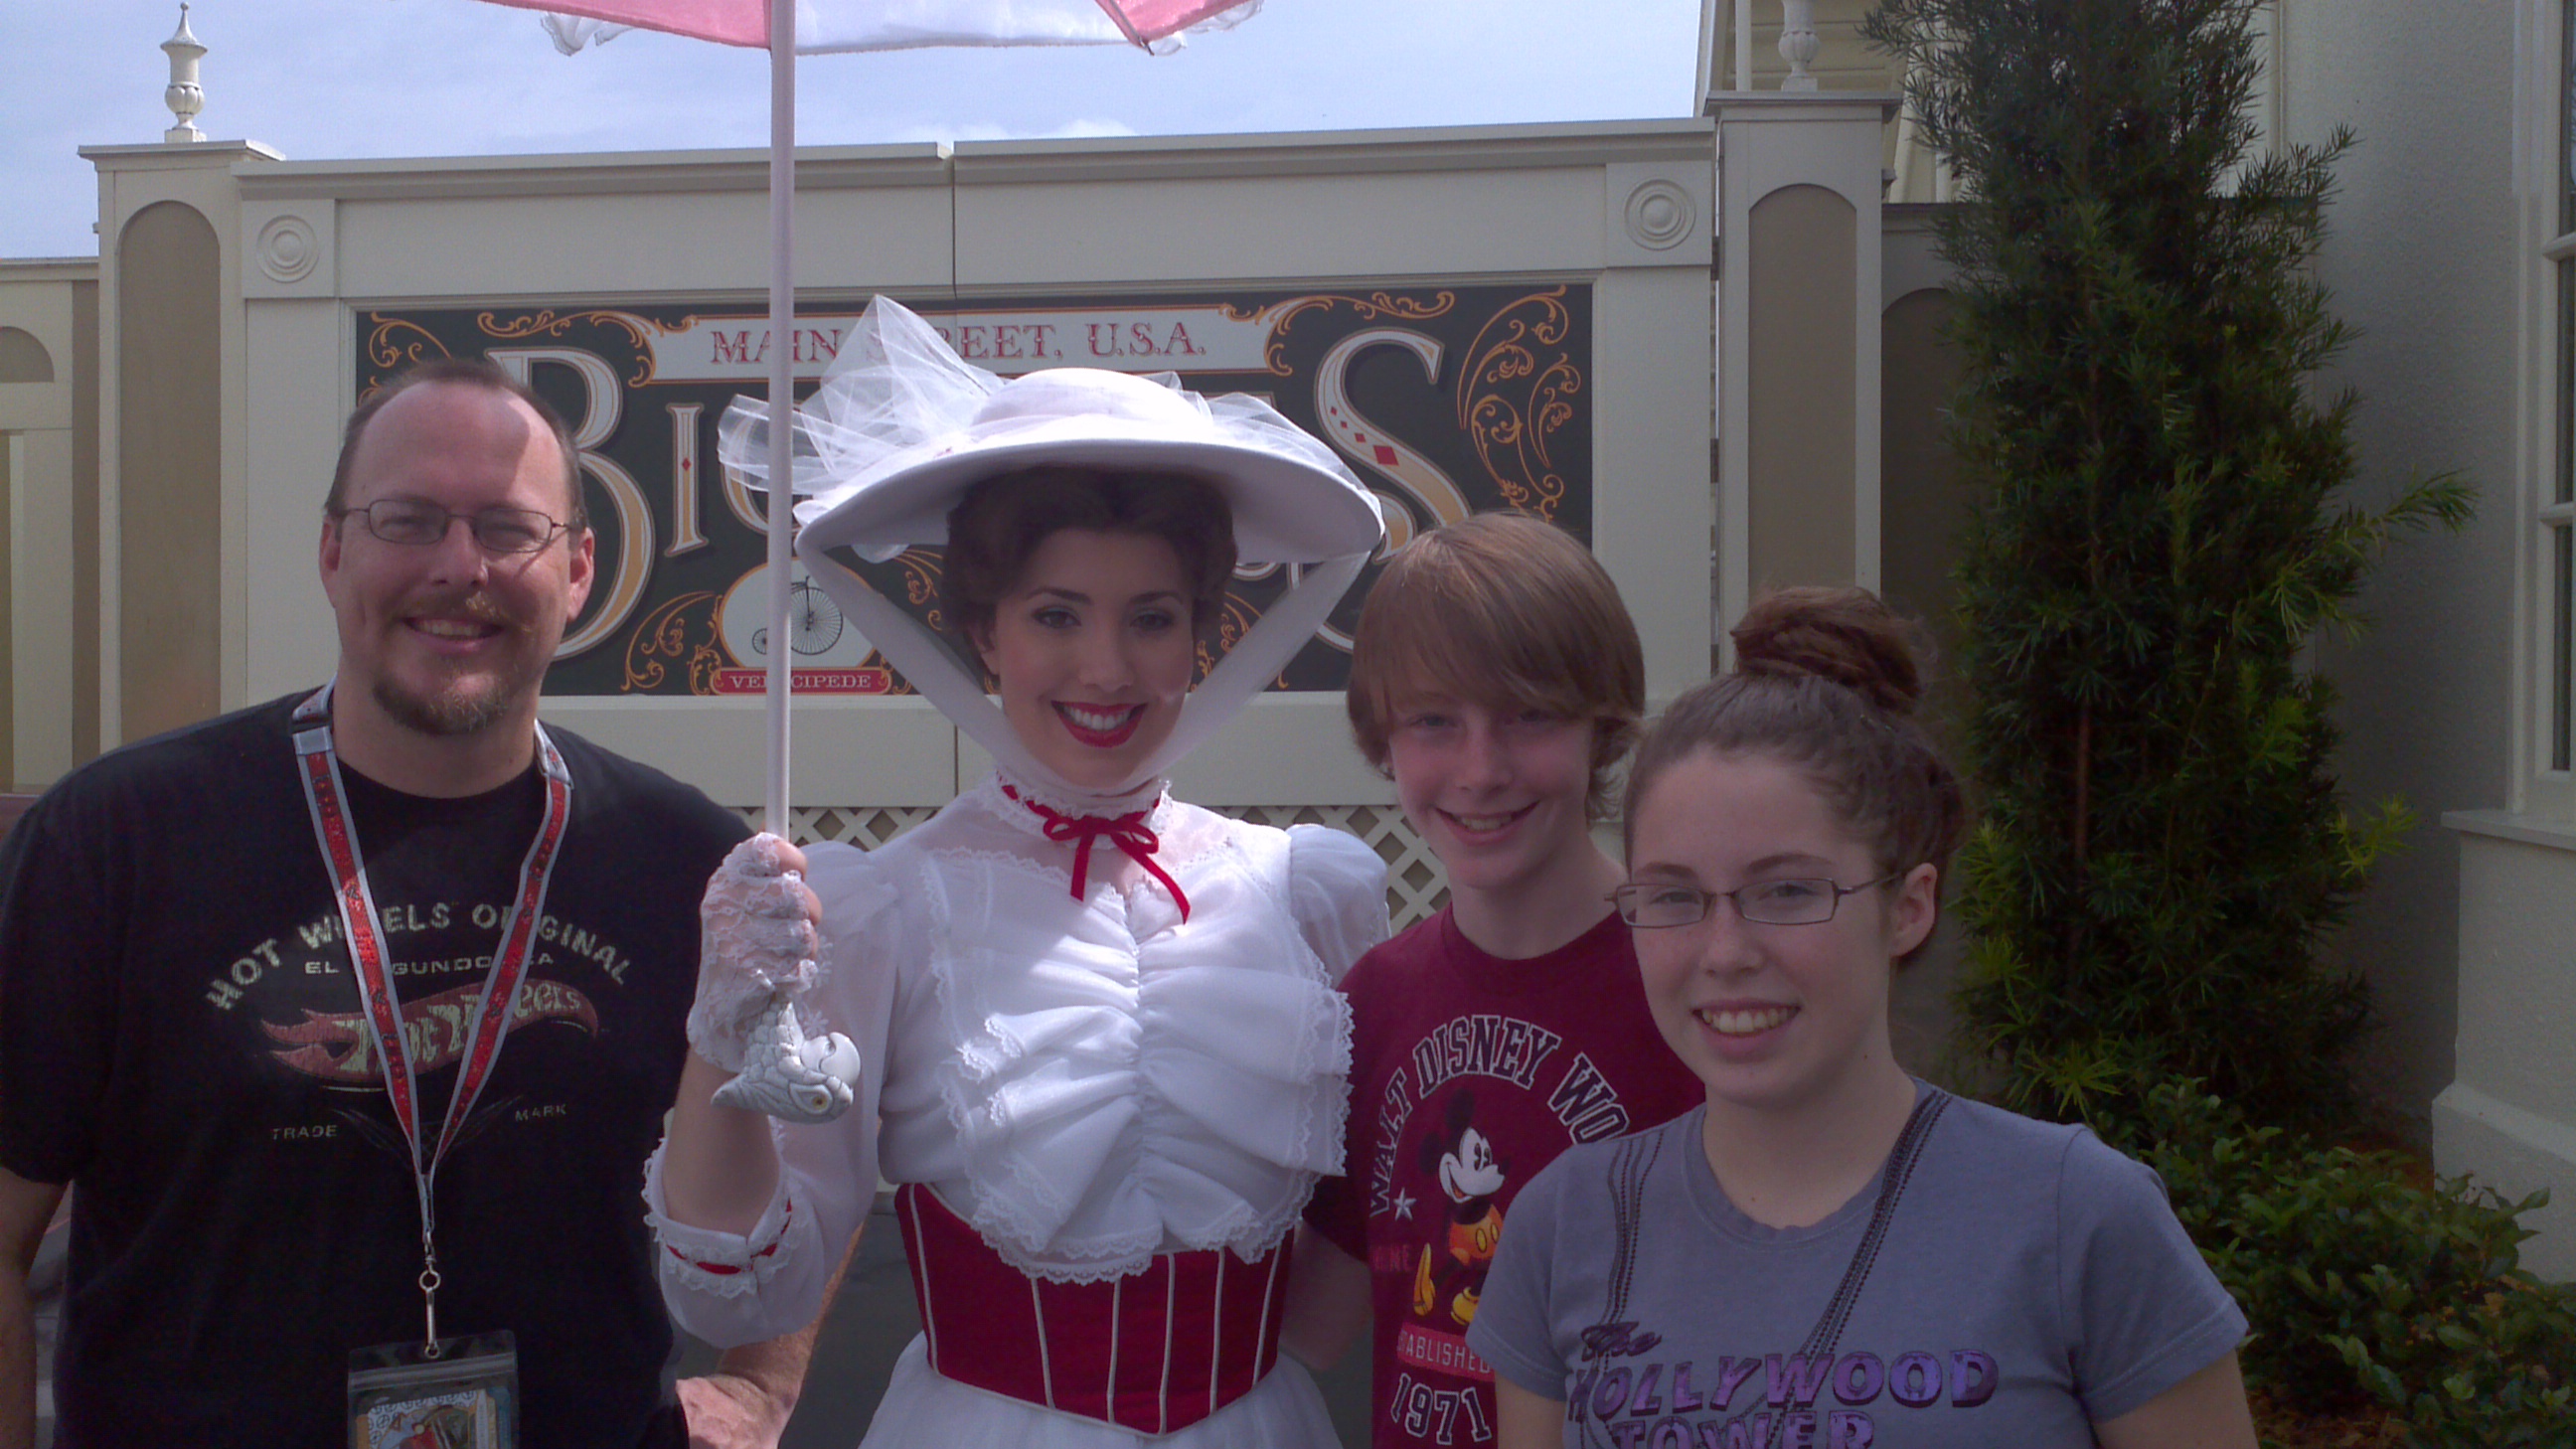 Mary Poppins Magic Kingdom 2012